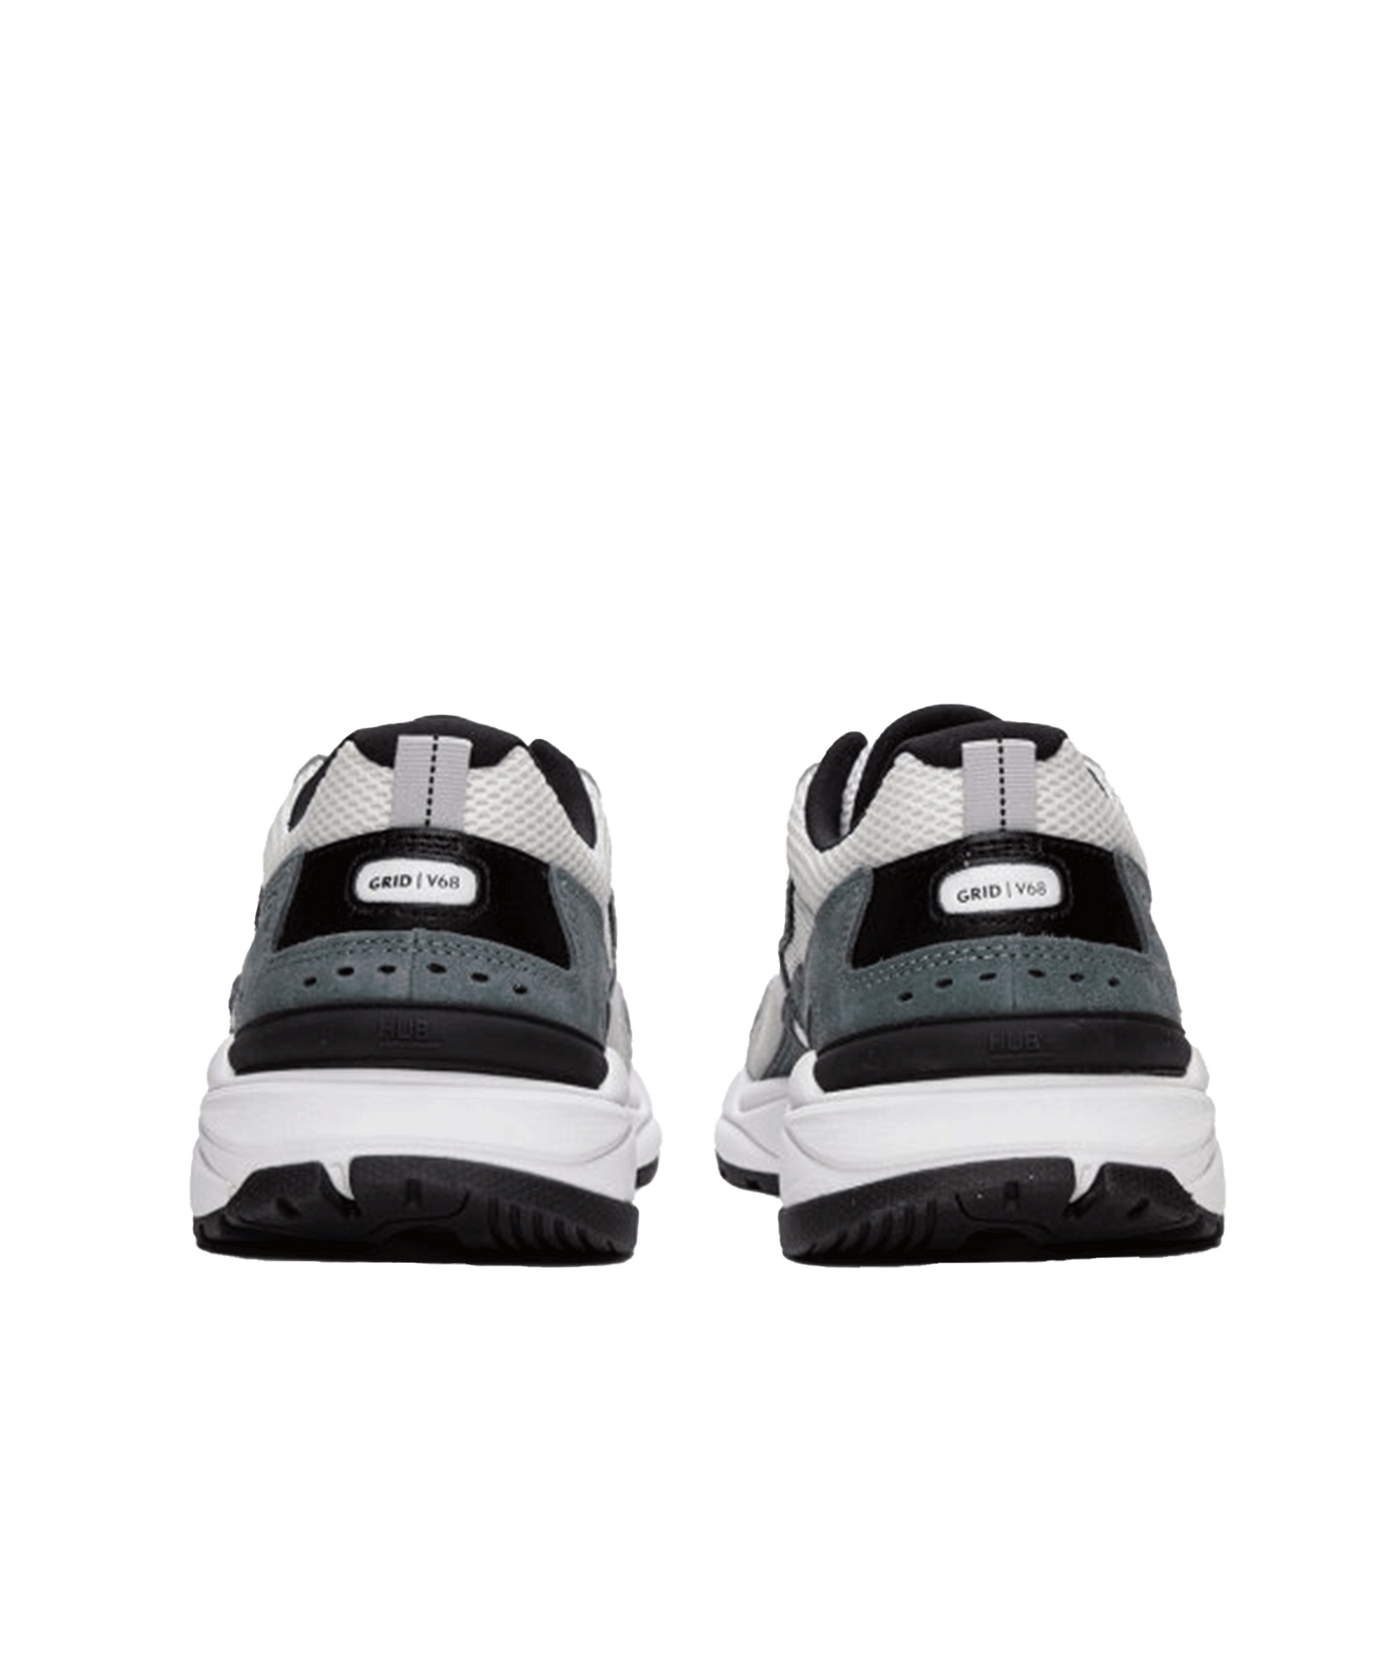 HUB Footwear - Grid-m S48 - White/black